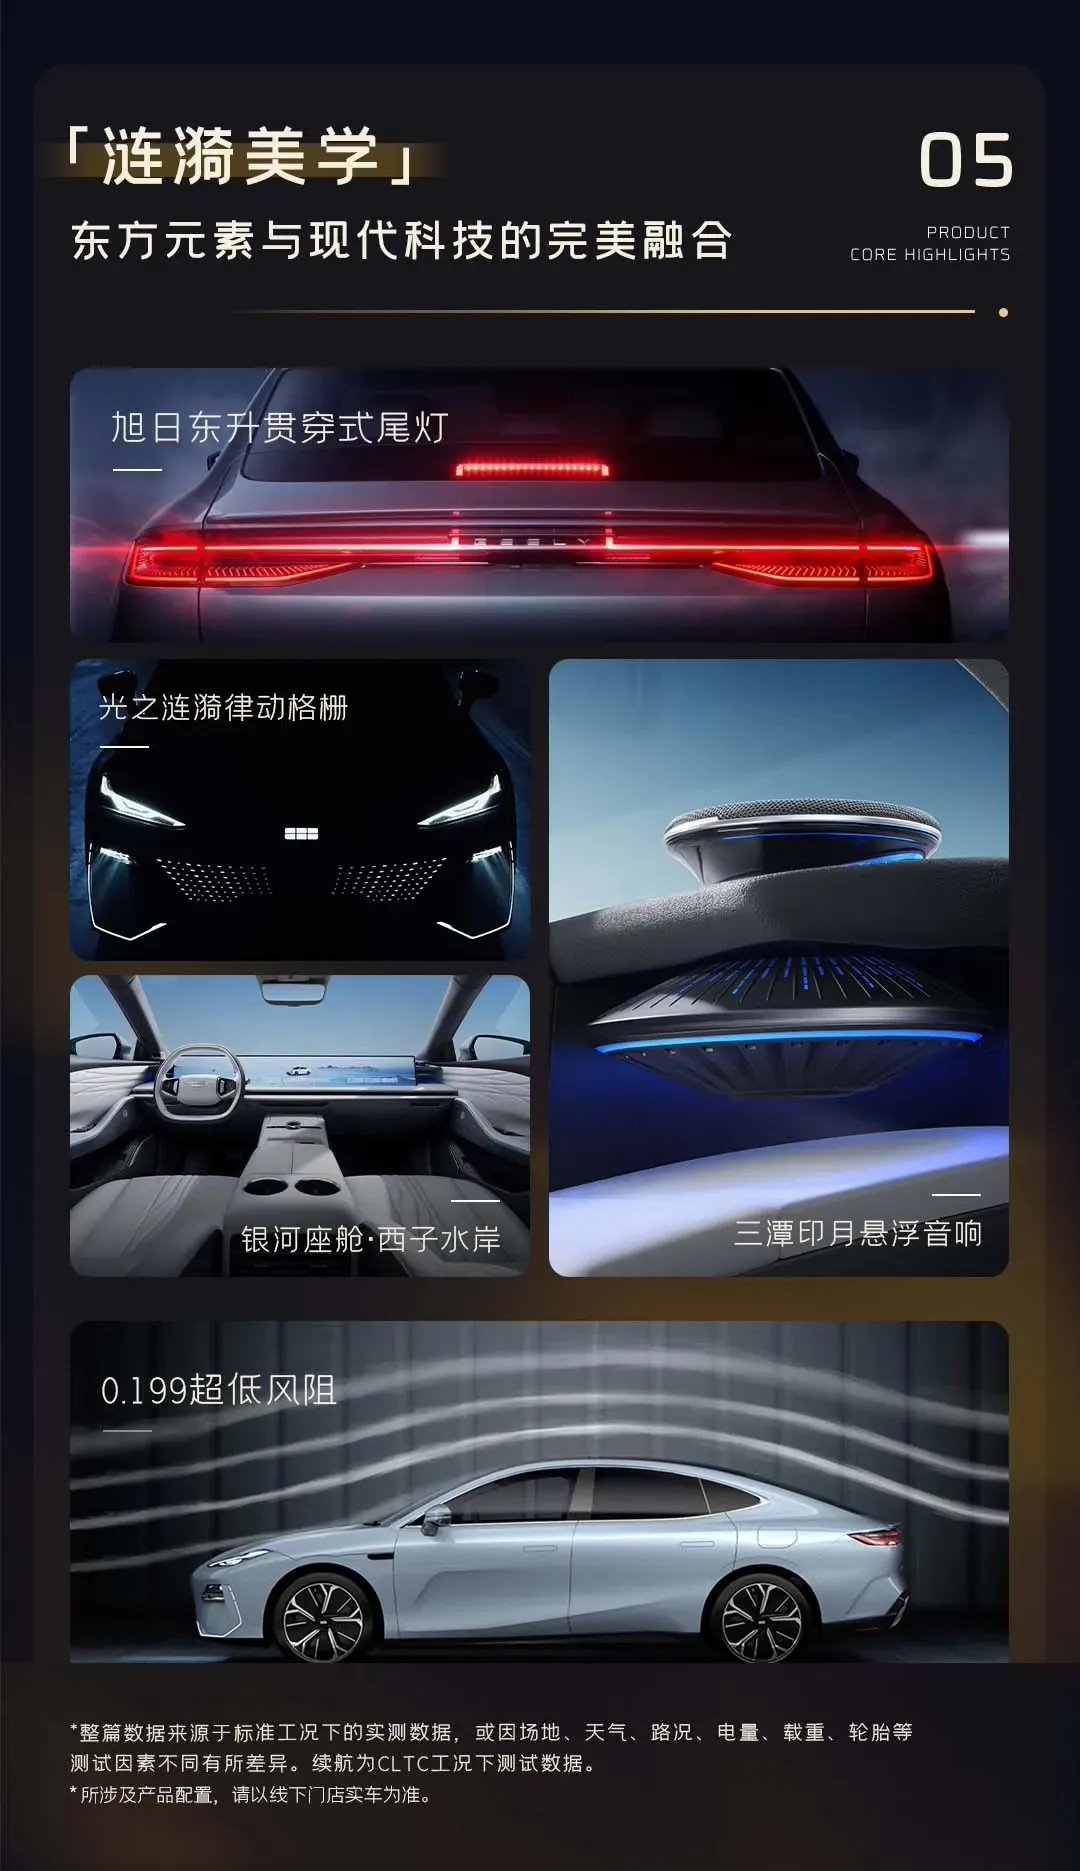 【愛車基地】吉利銀河 E8 轎車 1 月 5 日上市：預售 18.8 萬元起-第3張